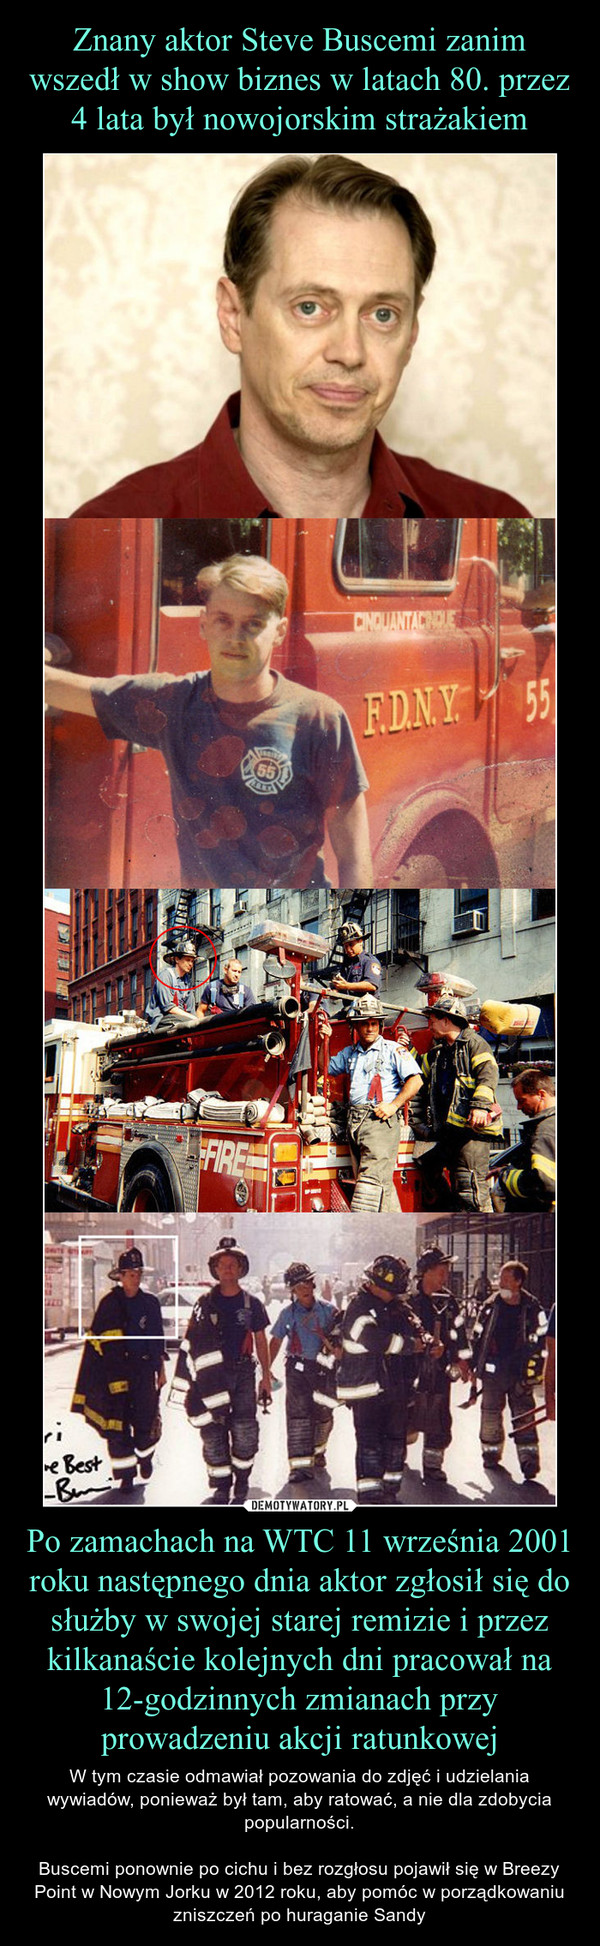 Znany aktor Steve Buscemi zanim wszedł w show biznes w latach 80. przez 4 lata był nowojorskim strażakiem Po zamachach na WTC 11 września 2001 roku następnego dnia aktor zgłosił się do służby w swojej starej remizie i przez kilkanaście kolejnych dni pracował na 12-godzinnych zmianach przy prowadzeniu akcji ratunkowej